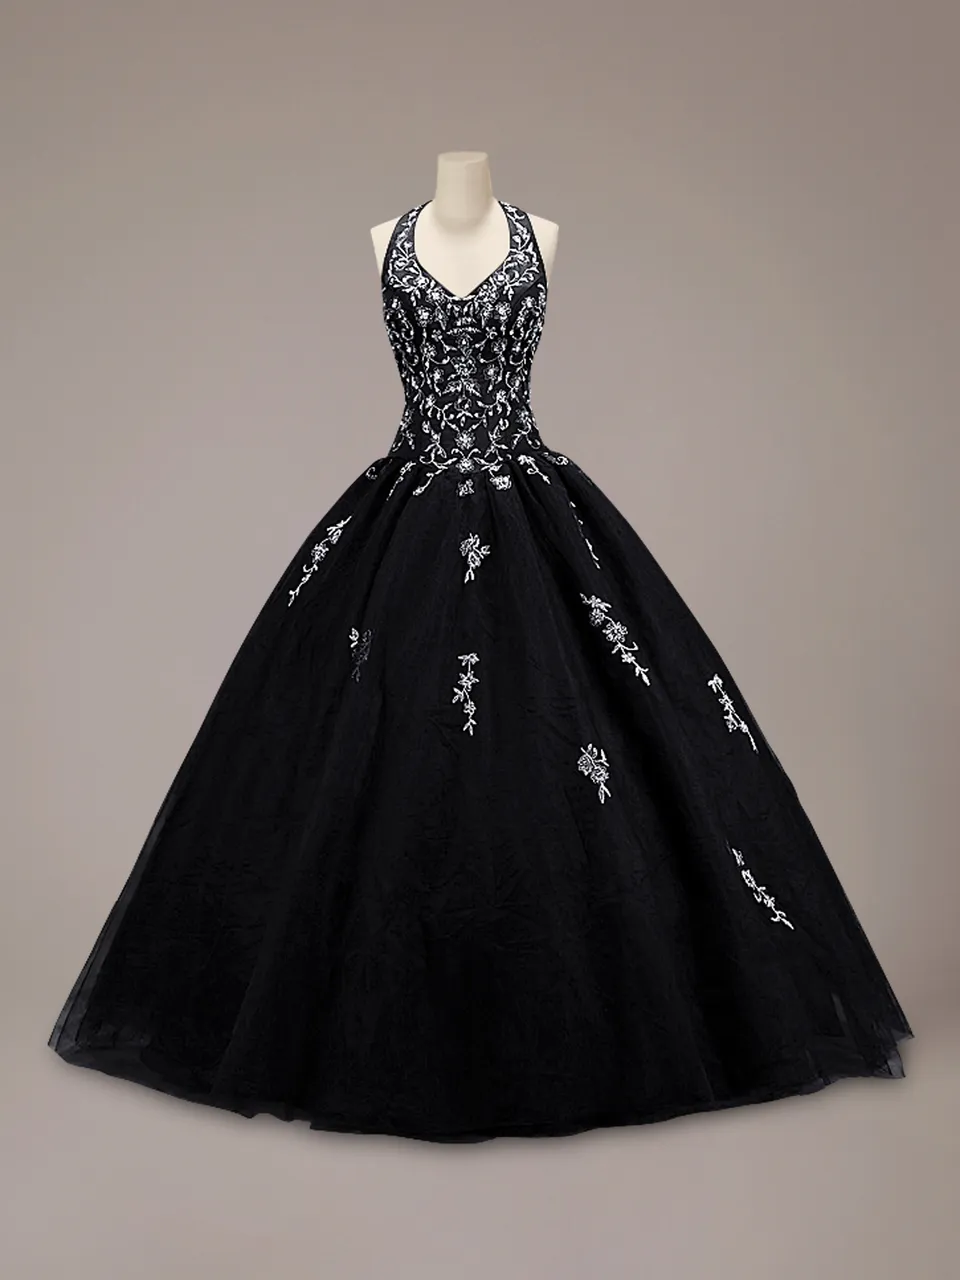 Vintage coloré noir robe de bal gothique robe de mariée licou tulle jupe argent broderie étage longueur non blanc robes de mariée couture